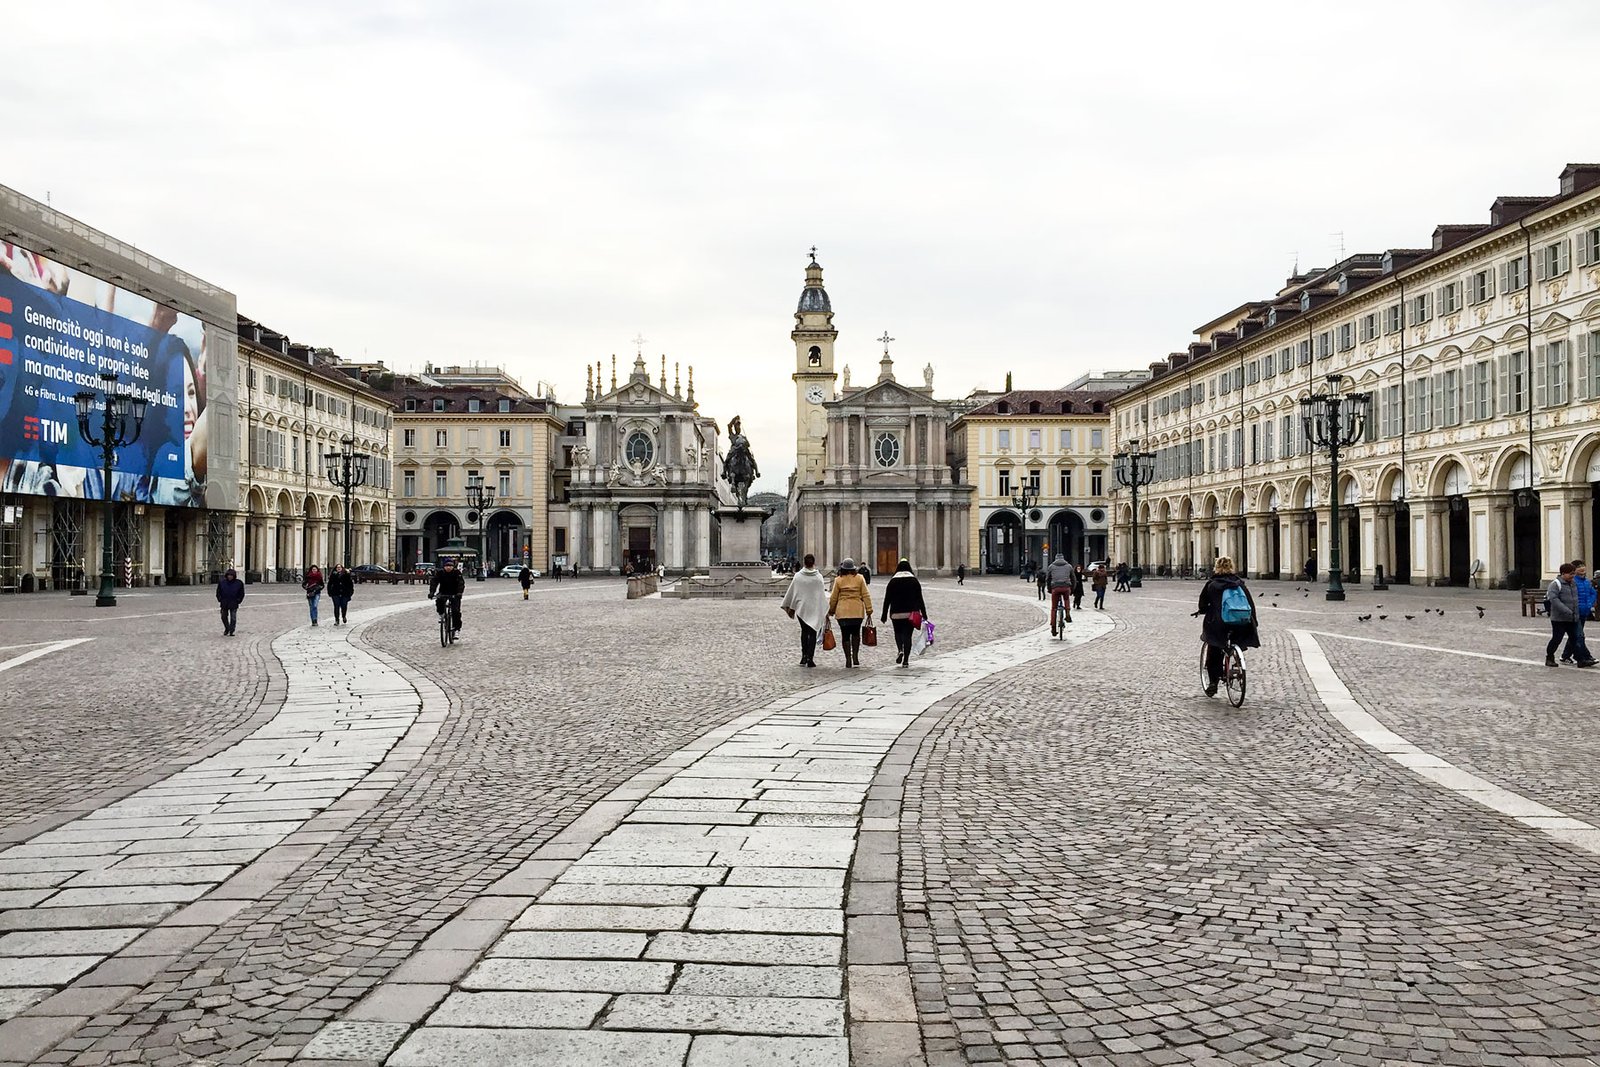 Piazza San Carlo in Turin.